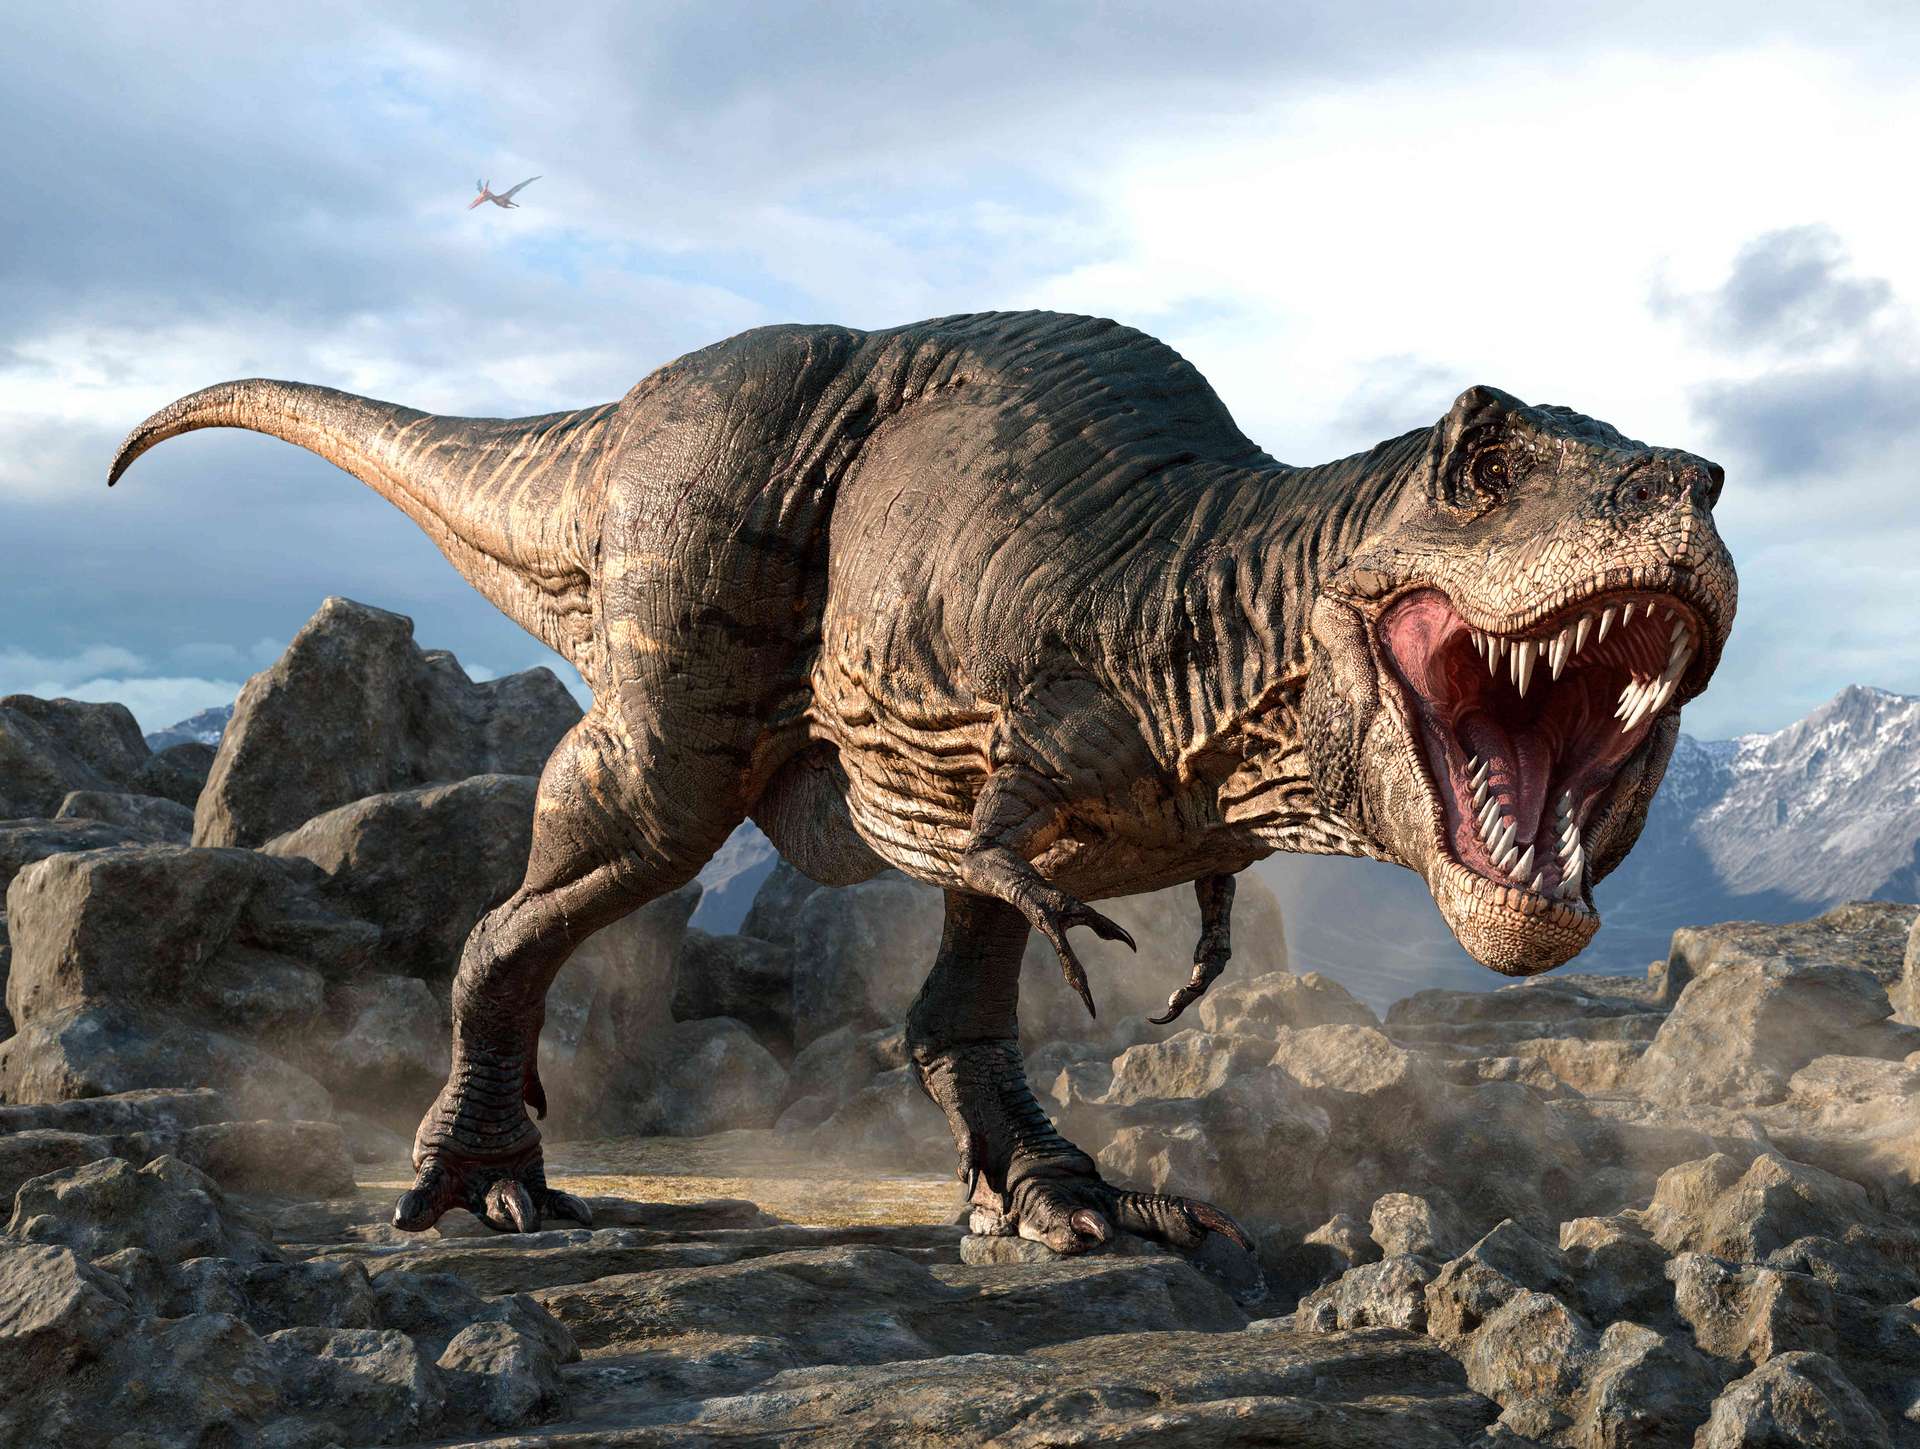 La tête des tyrannosaures était différente de ce que l’on imagine